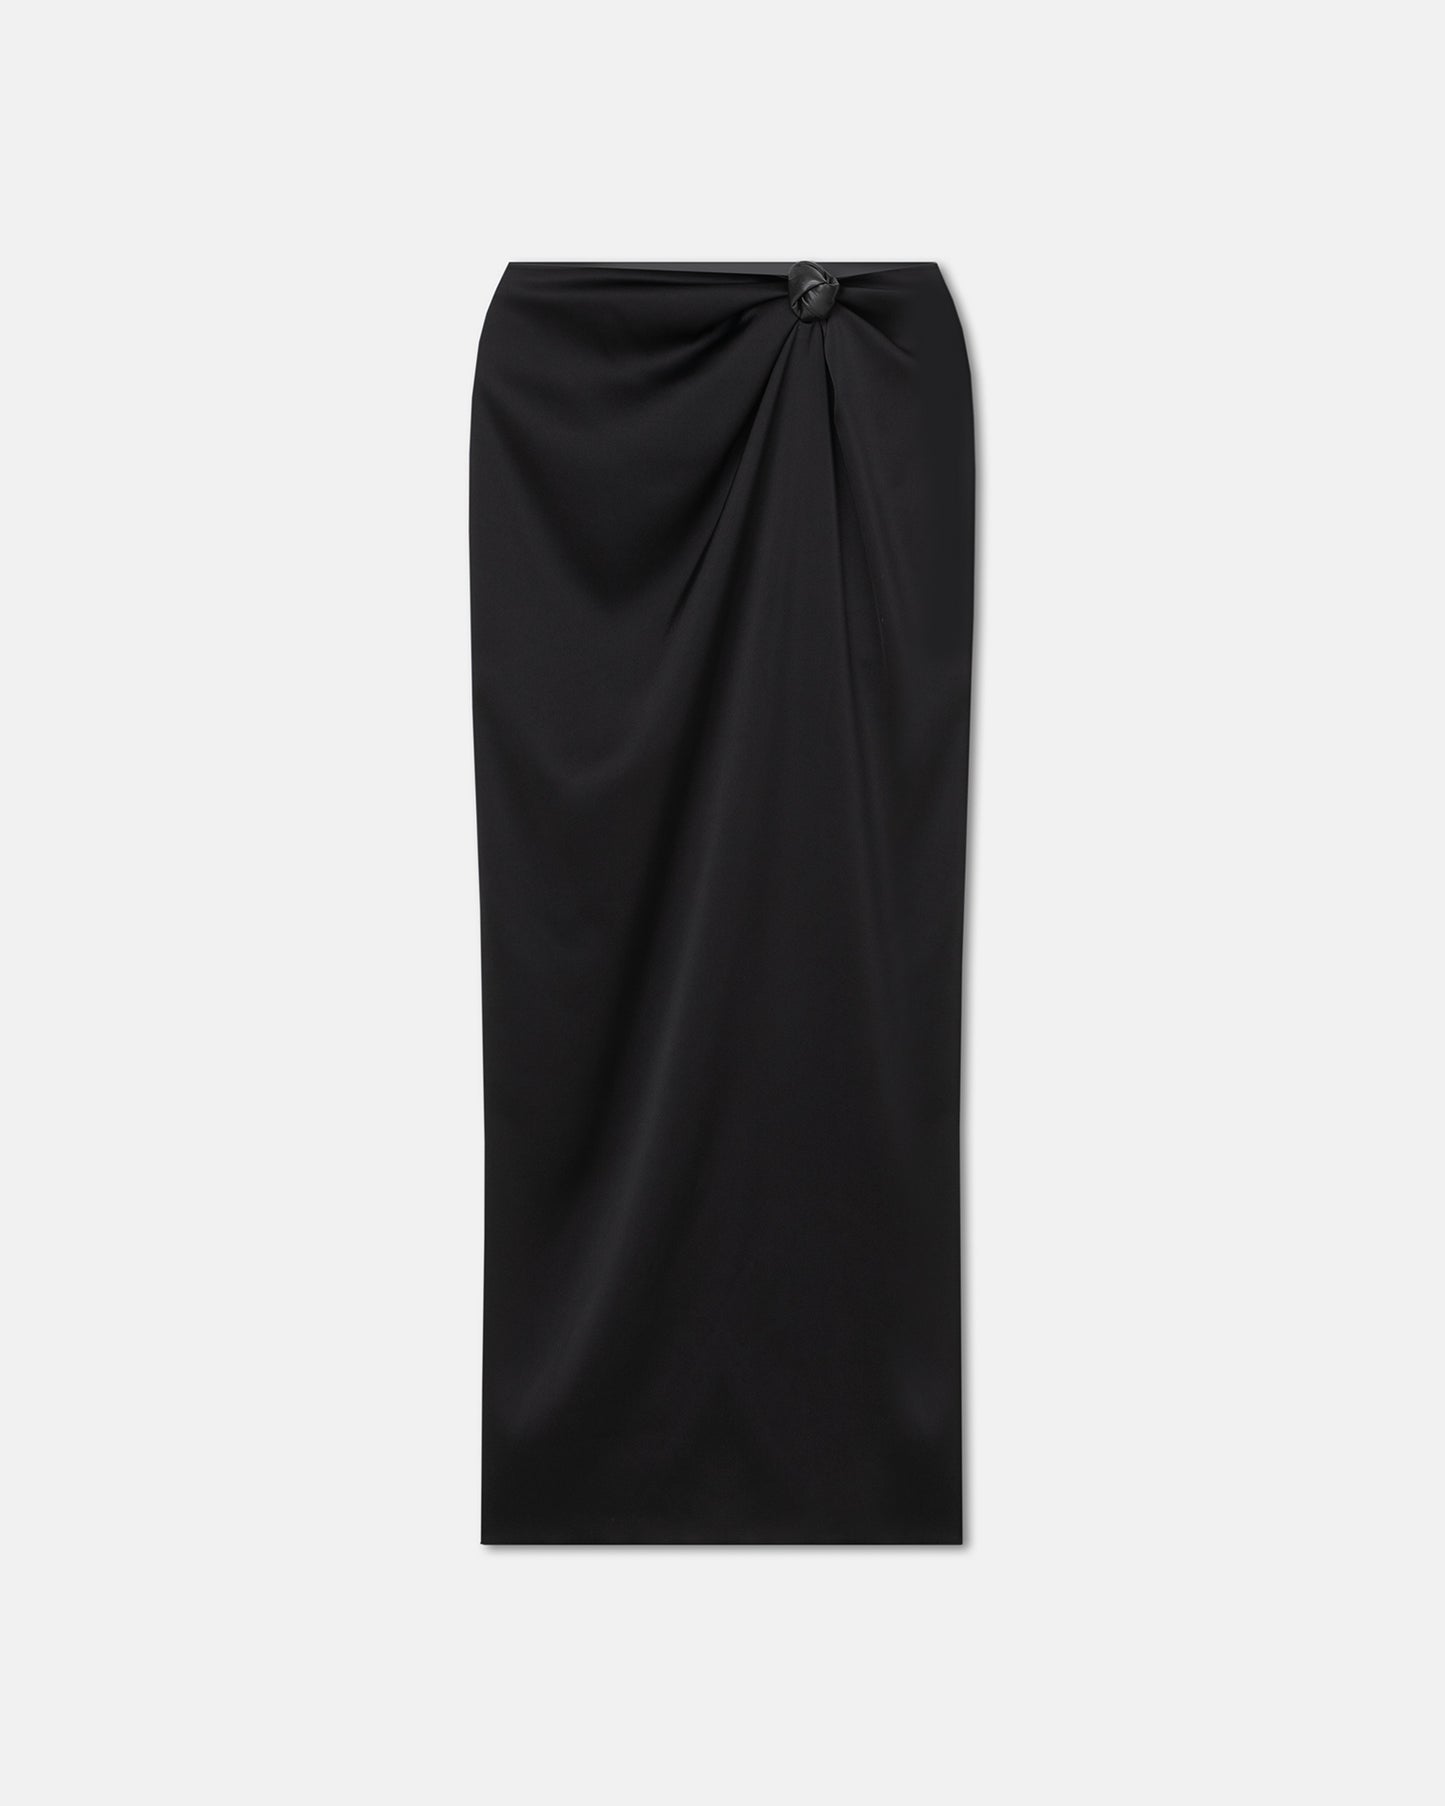 Nago - Knotted Slip Satin Skirt - Black